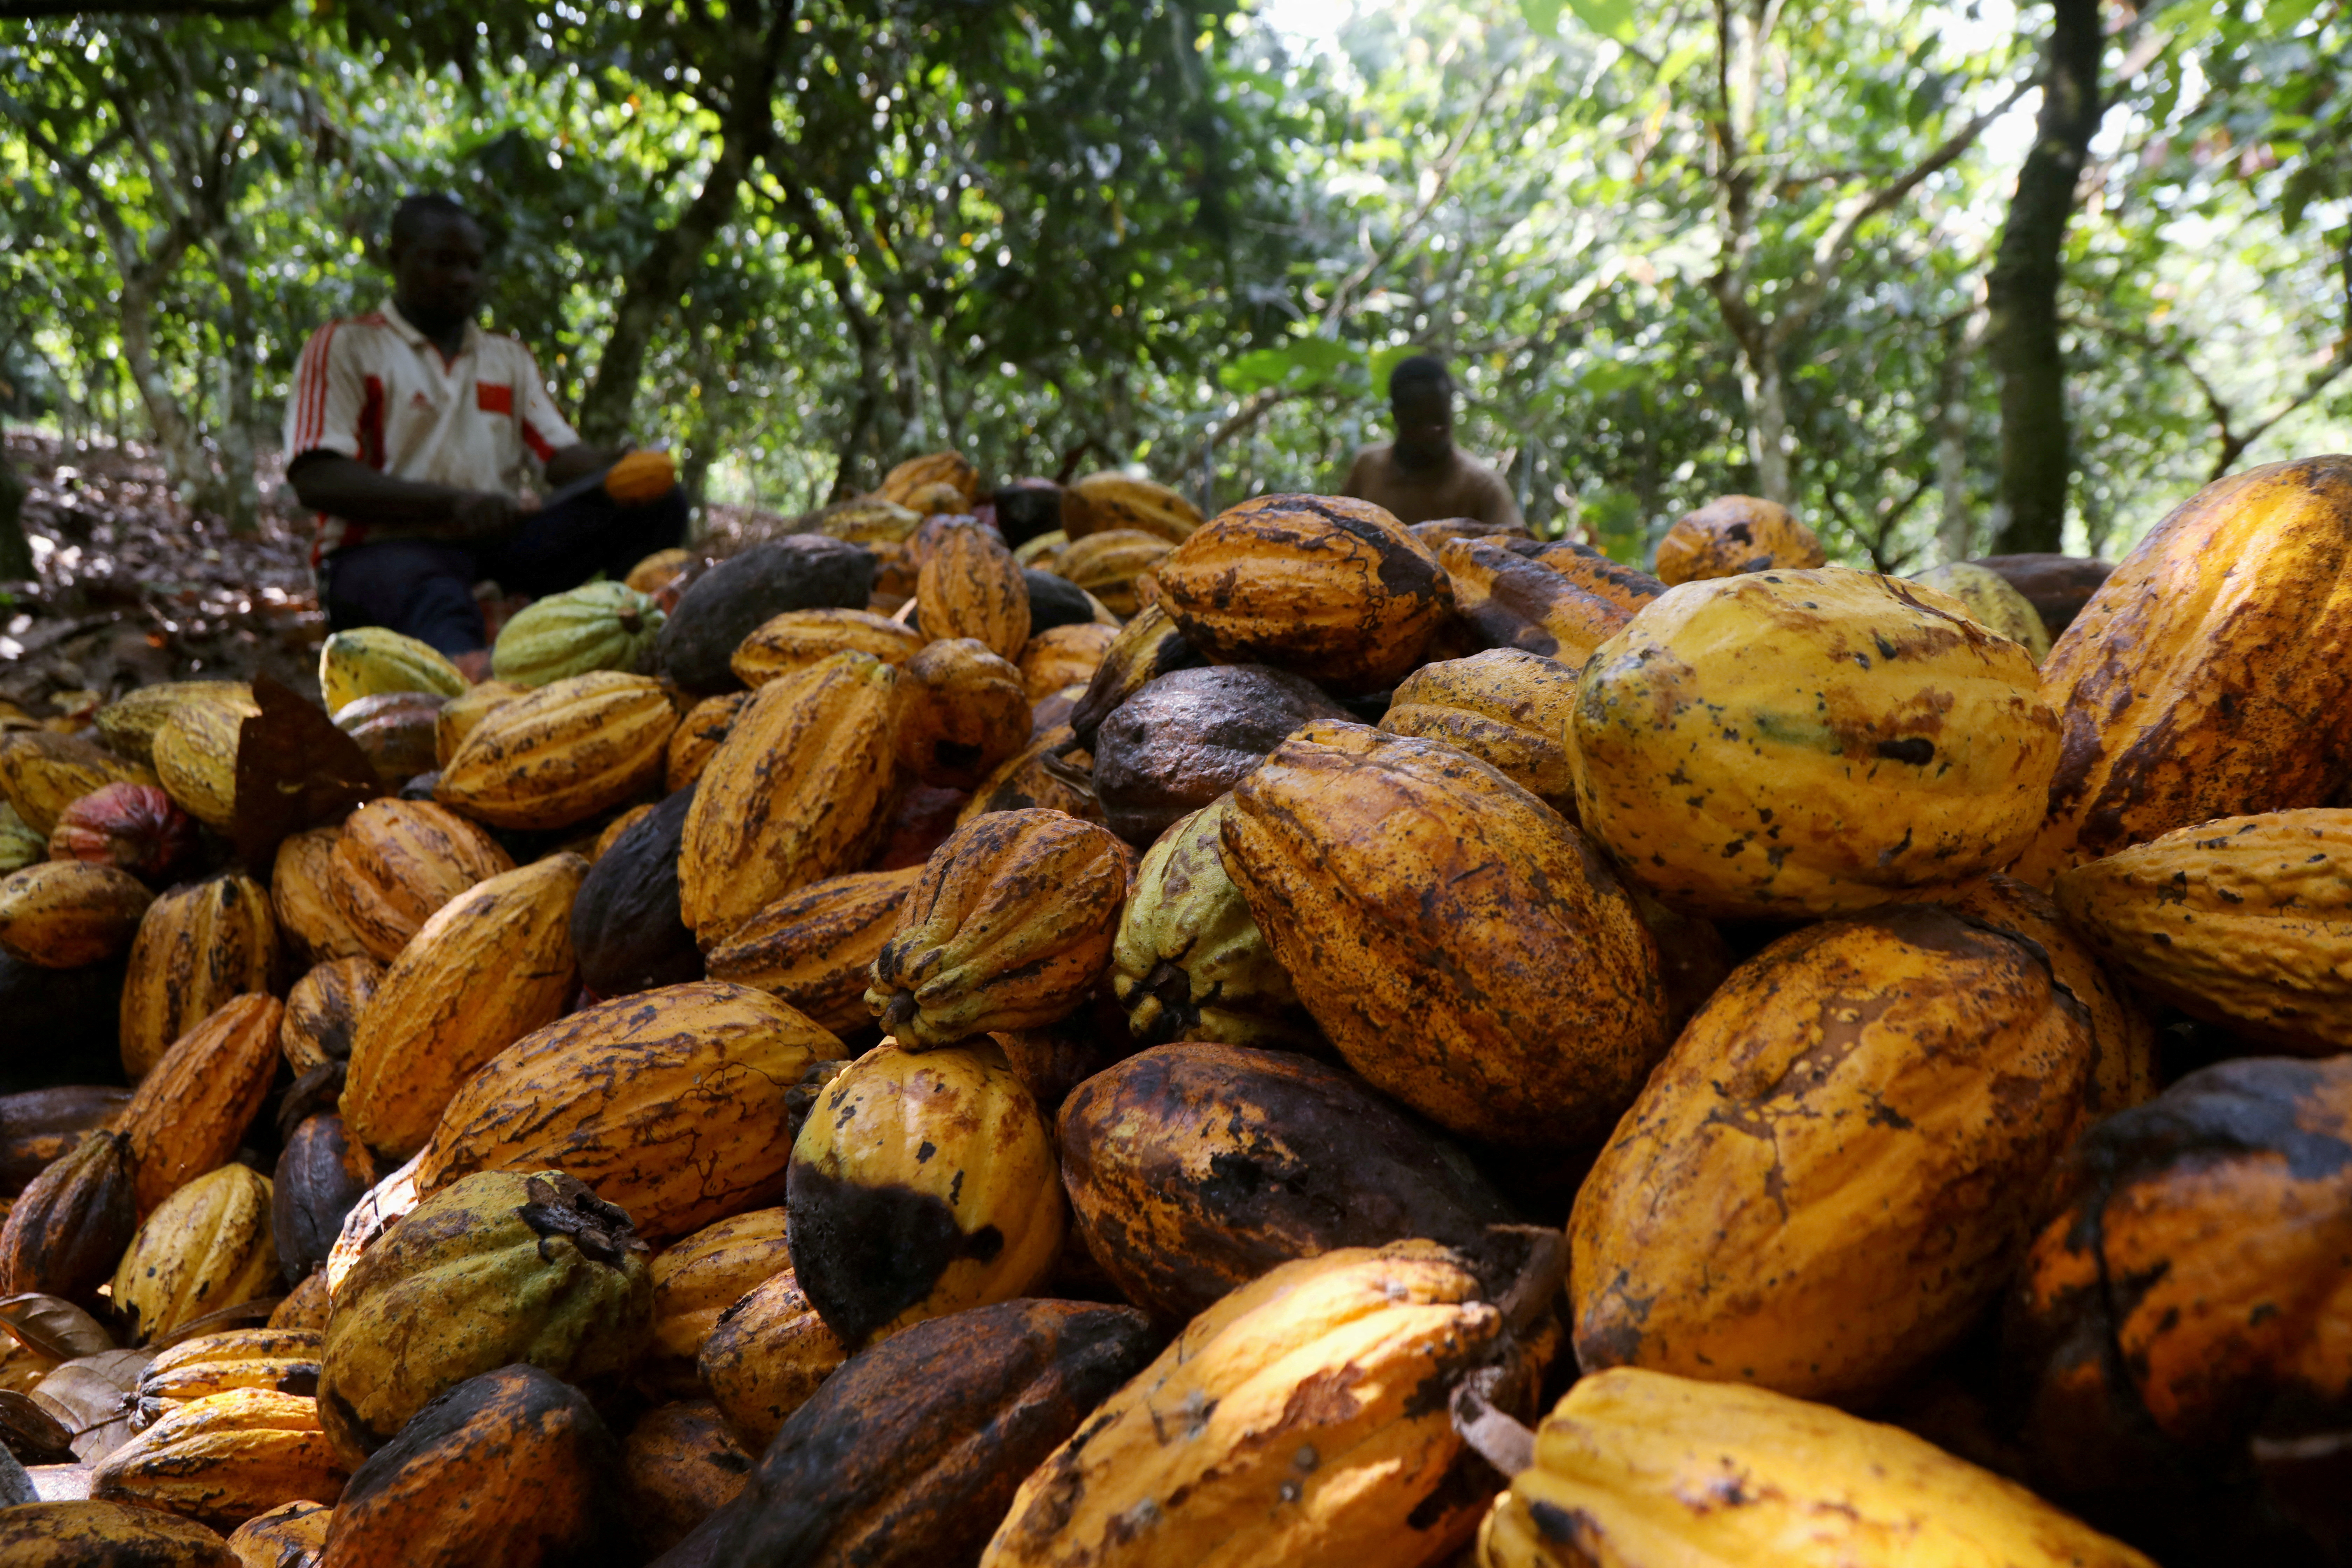 Los agricultores rompen las mazorcas de cacao en una finca de cacao en Soubre, Costa de Marfil